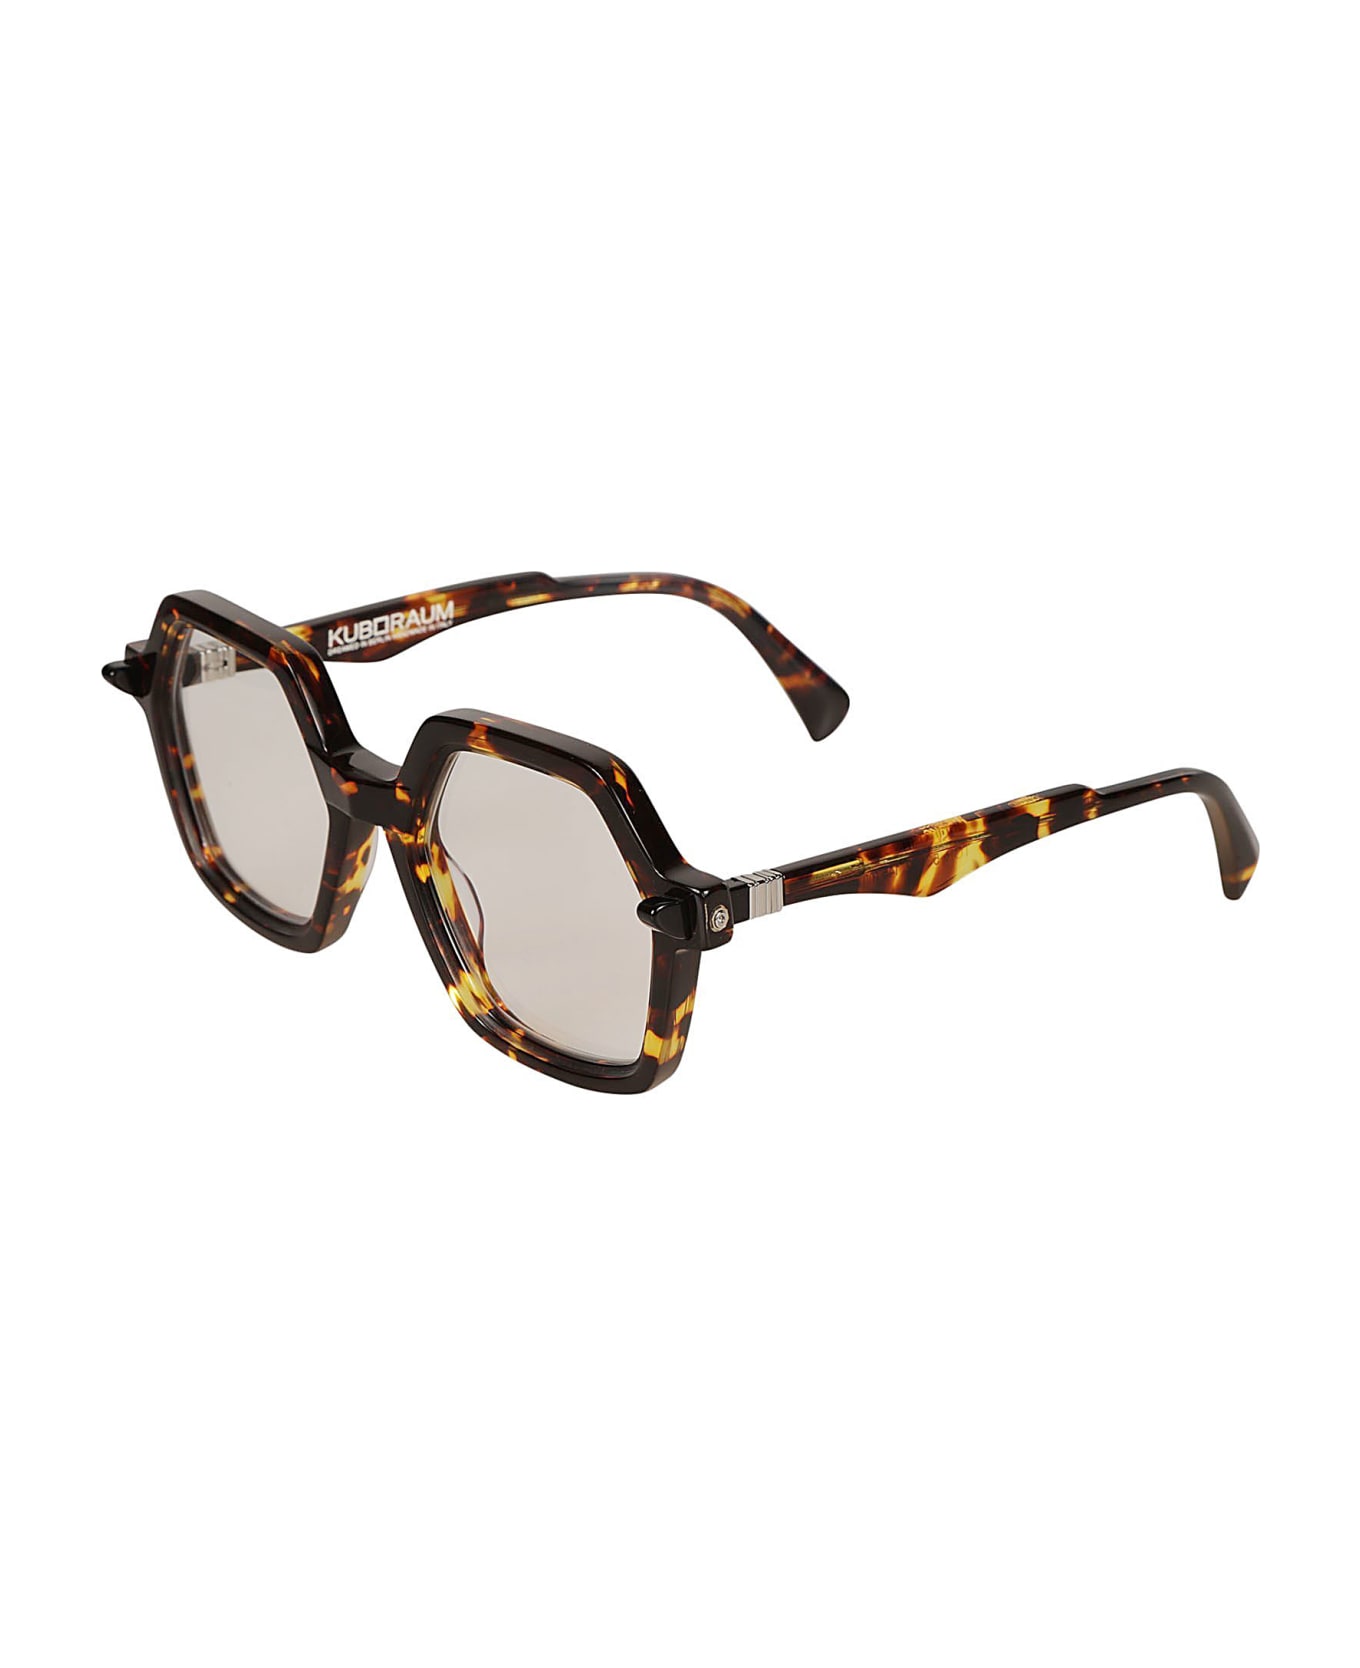 Kuboraum Q8 Glasses Glasses - havana アイウェア